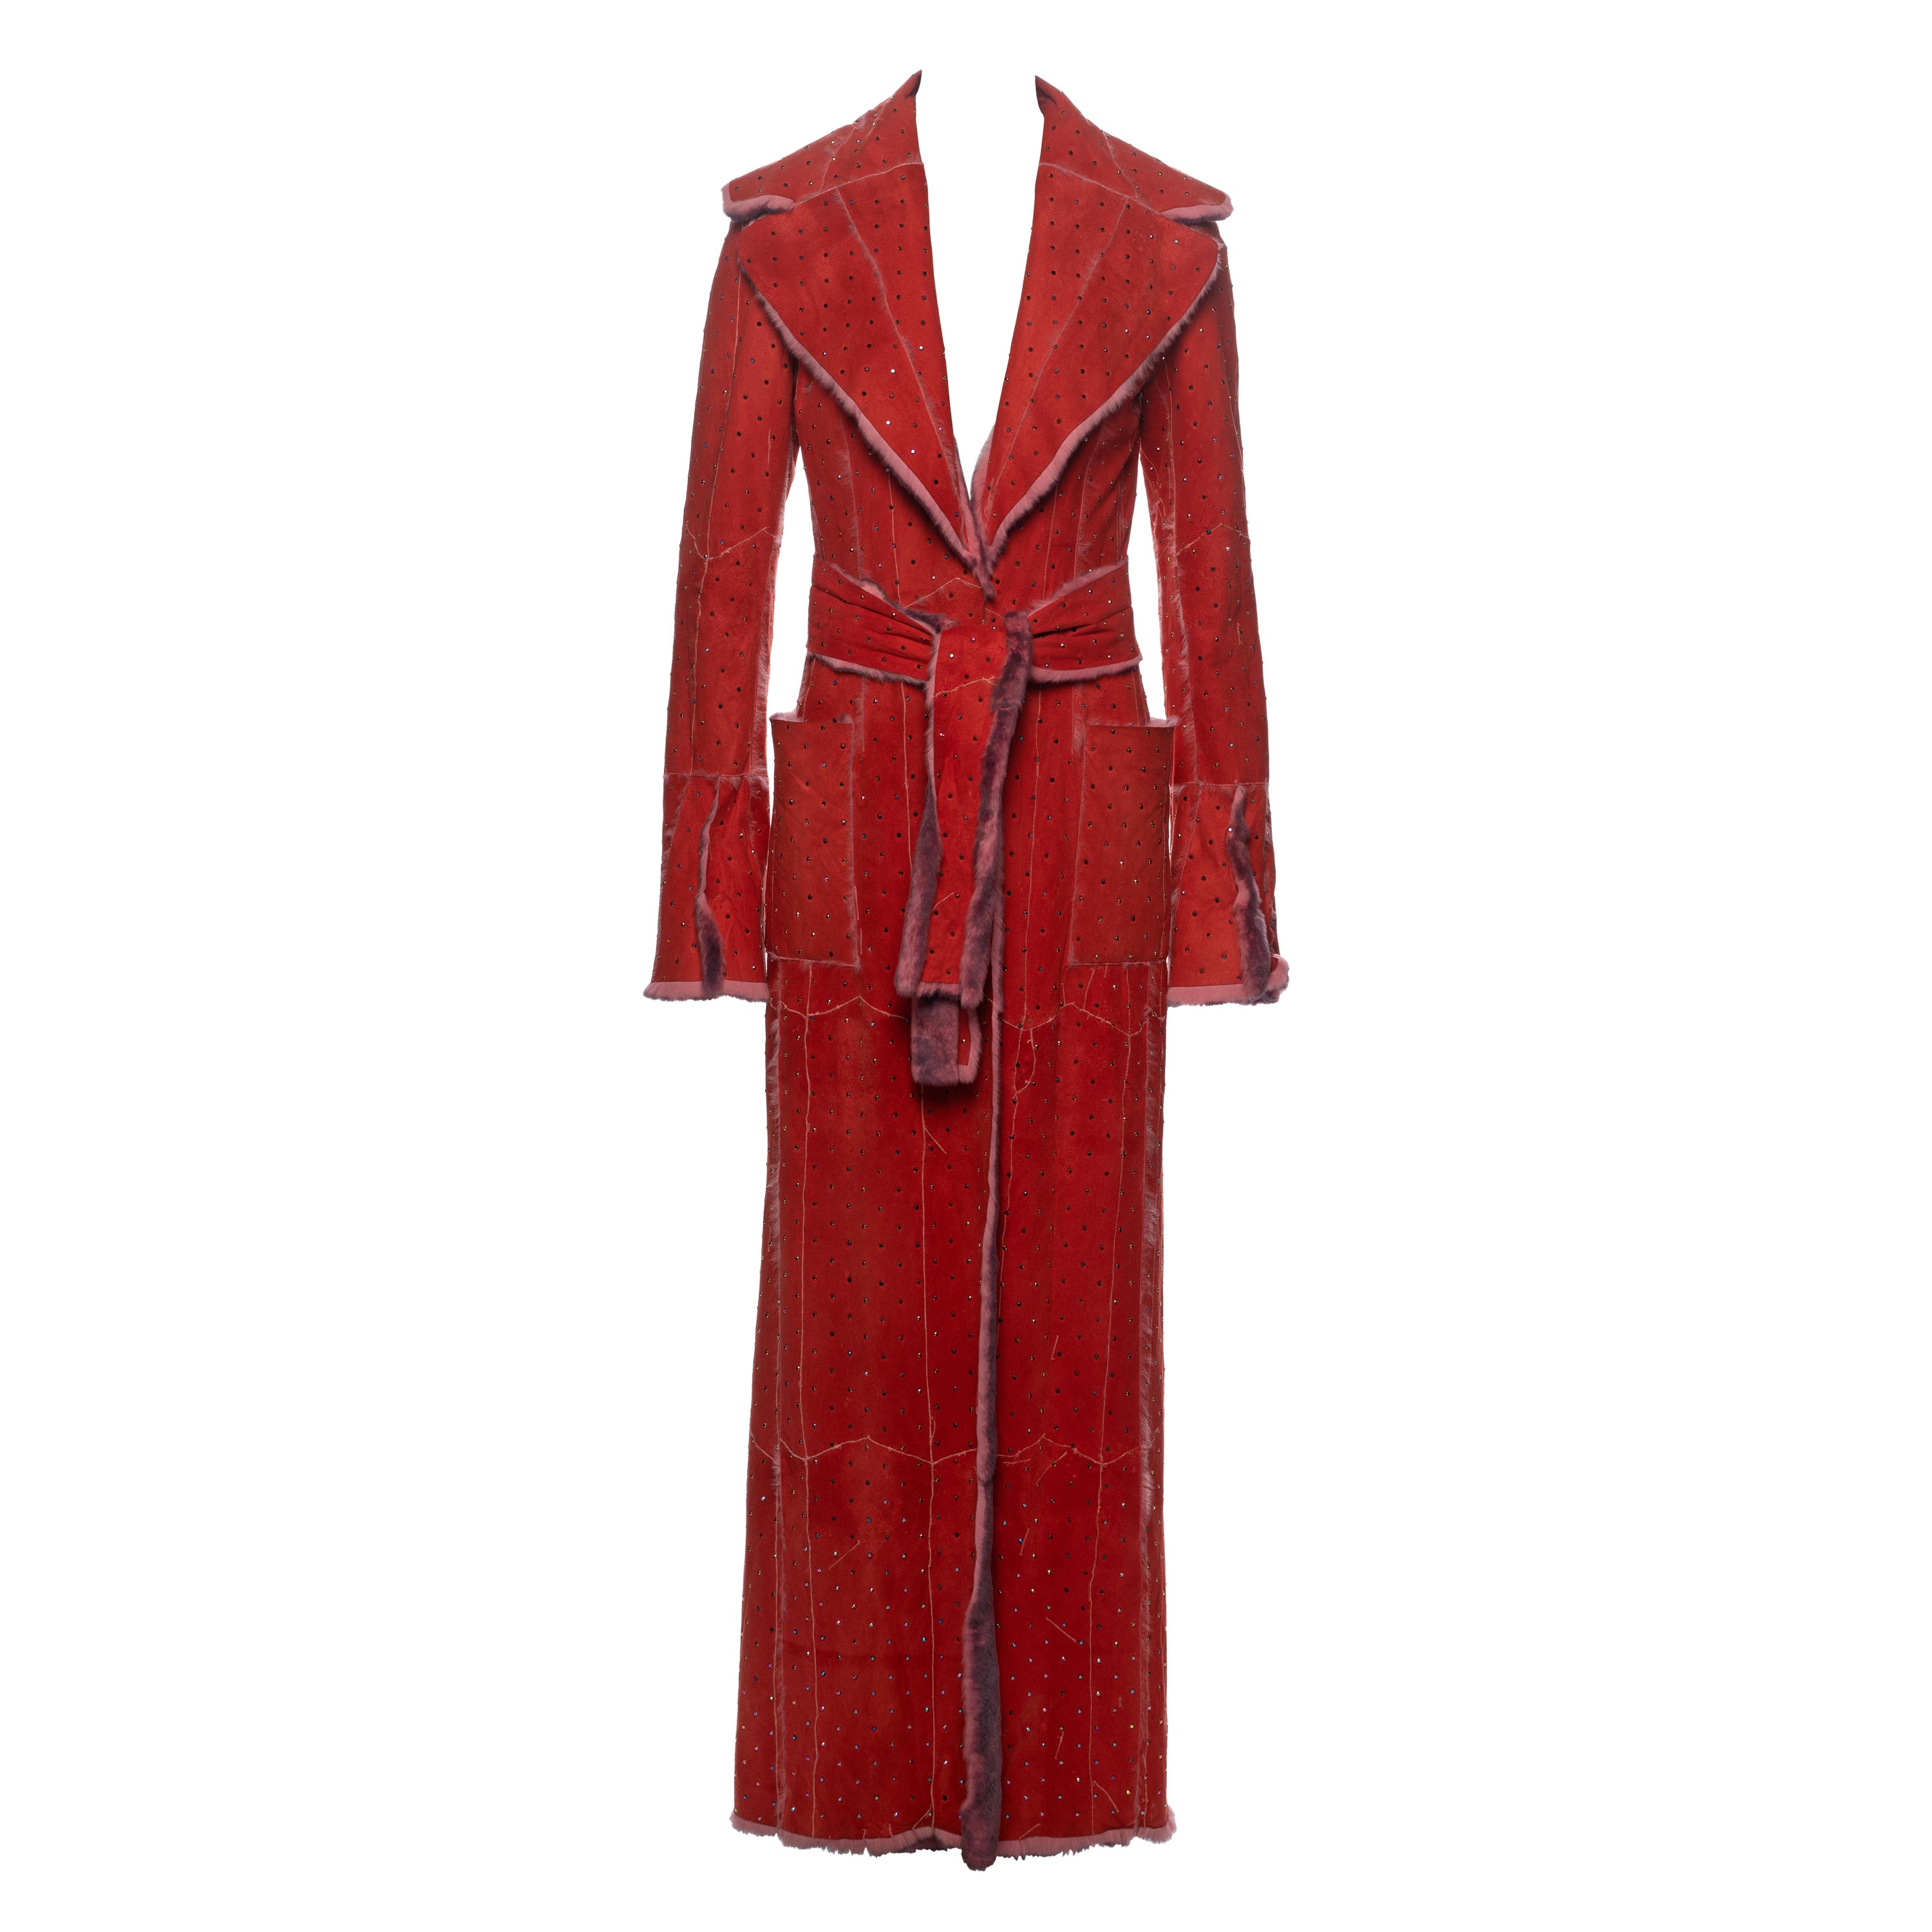 Dolce & Gabbana Crystal Adorned Red Mink Floor-Length Coat, FW 2000 For Sale